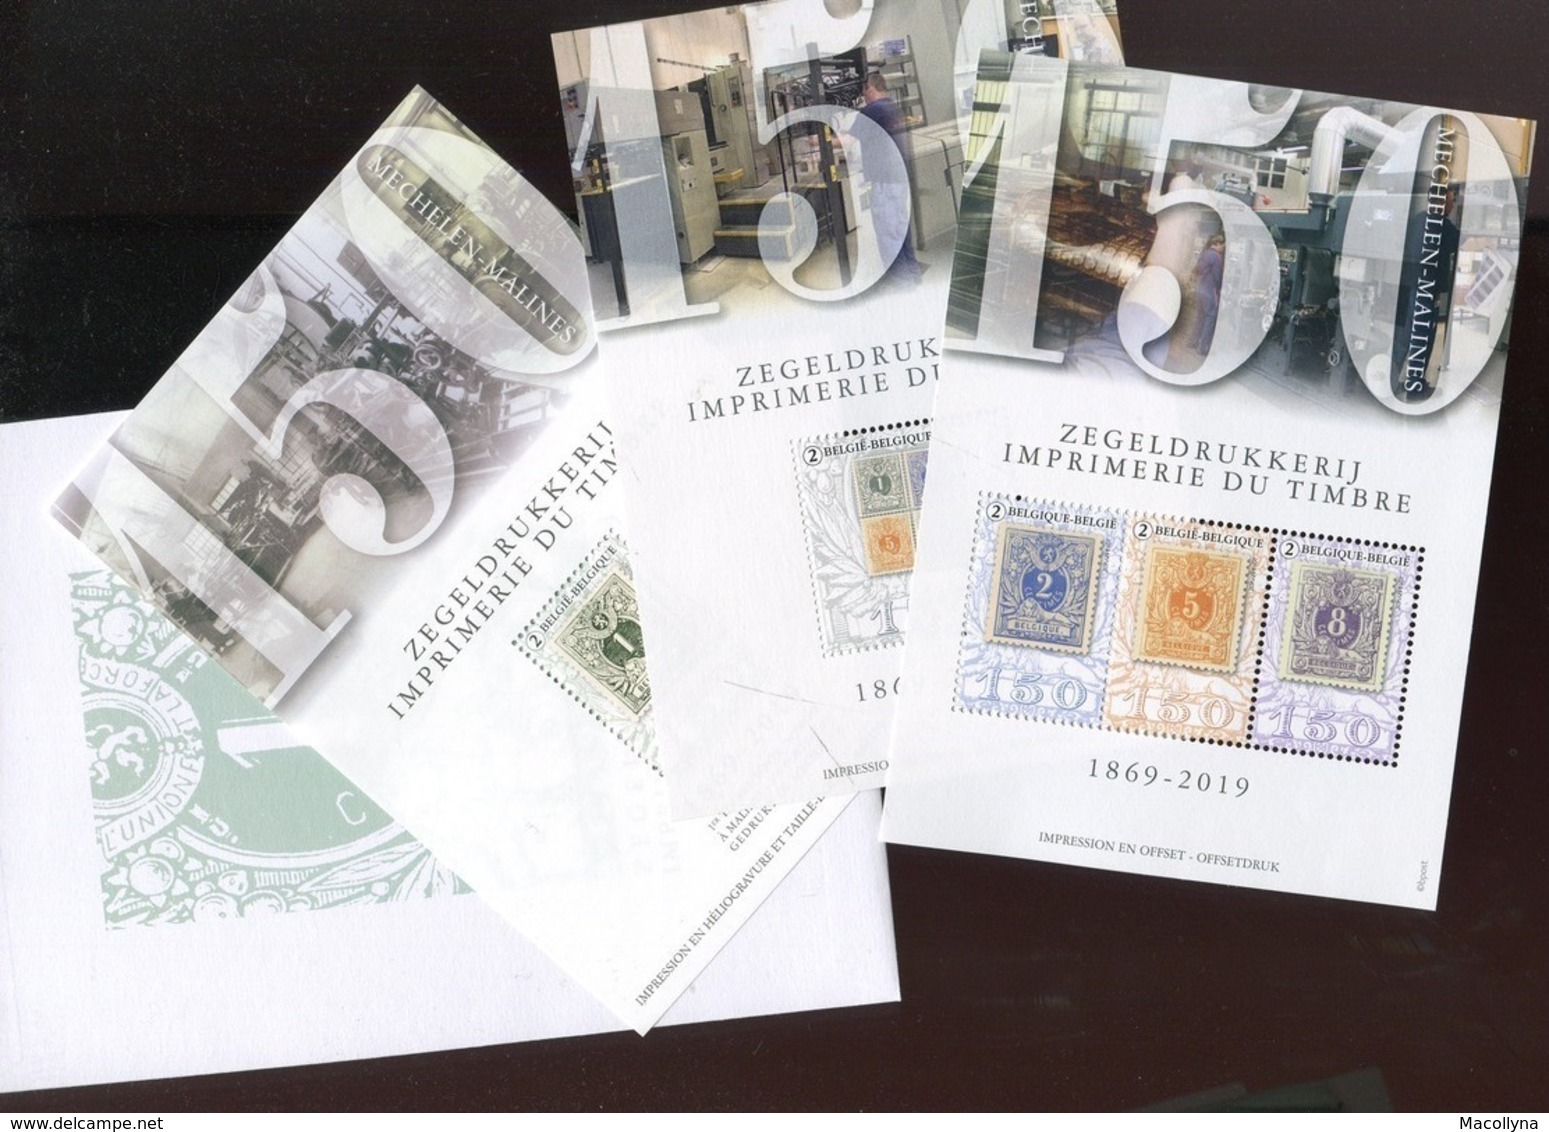 150 Jaar (ans) Zegeldrukkerij Mechelen - Imprimerie Du Timbre Malines MNH !! / Belgie 2019 - Unused Stamps